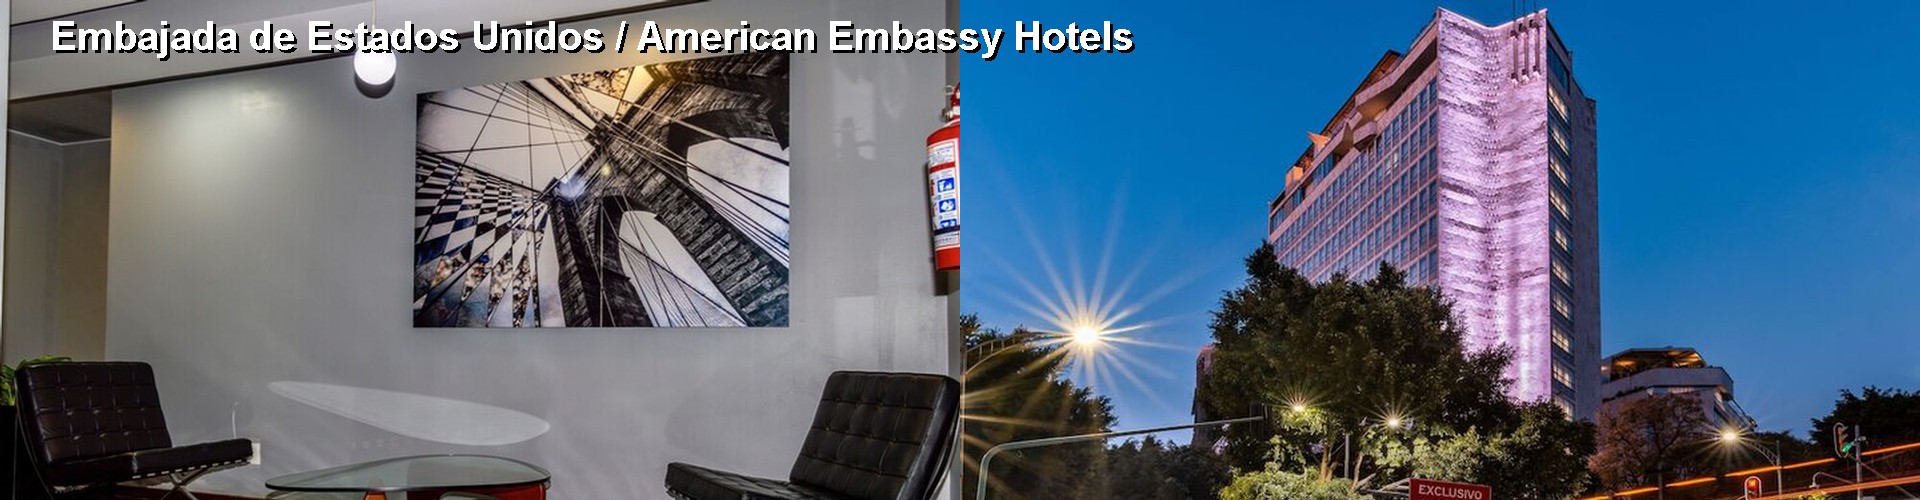 5 Best Hotels near Embajada de Estados Unidos / American Embassy